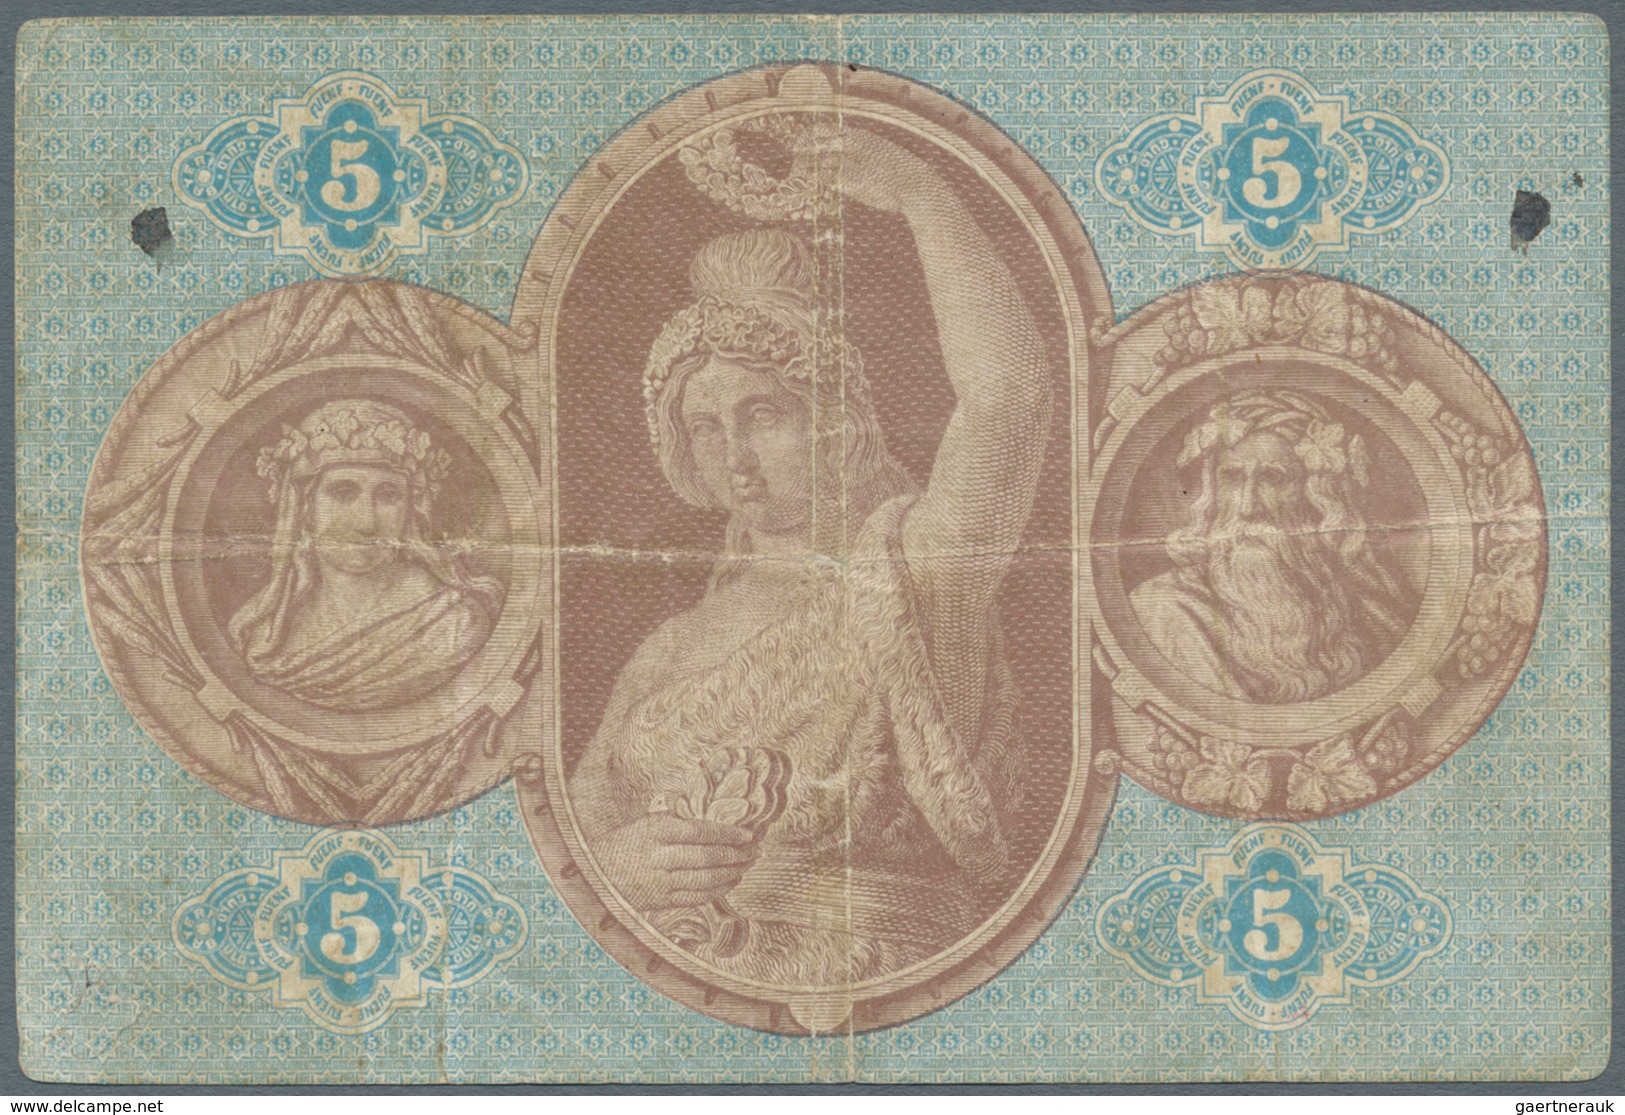 Deutschland - Altdeutsche Staaten: Bayern, 5 Gulden 1866 PiRi A37, Mit Horizontalen Und Vertikalen F - [ 1] …-1871 : Duitse Staten